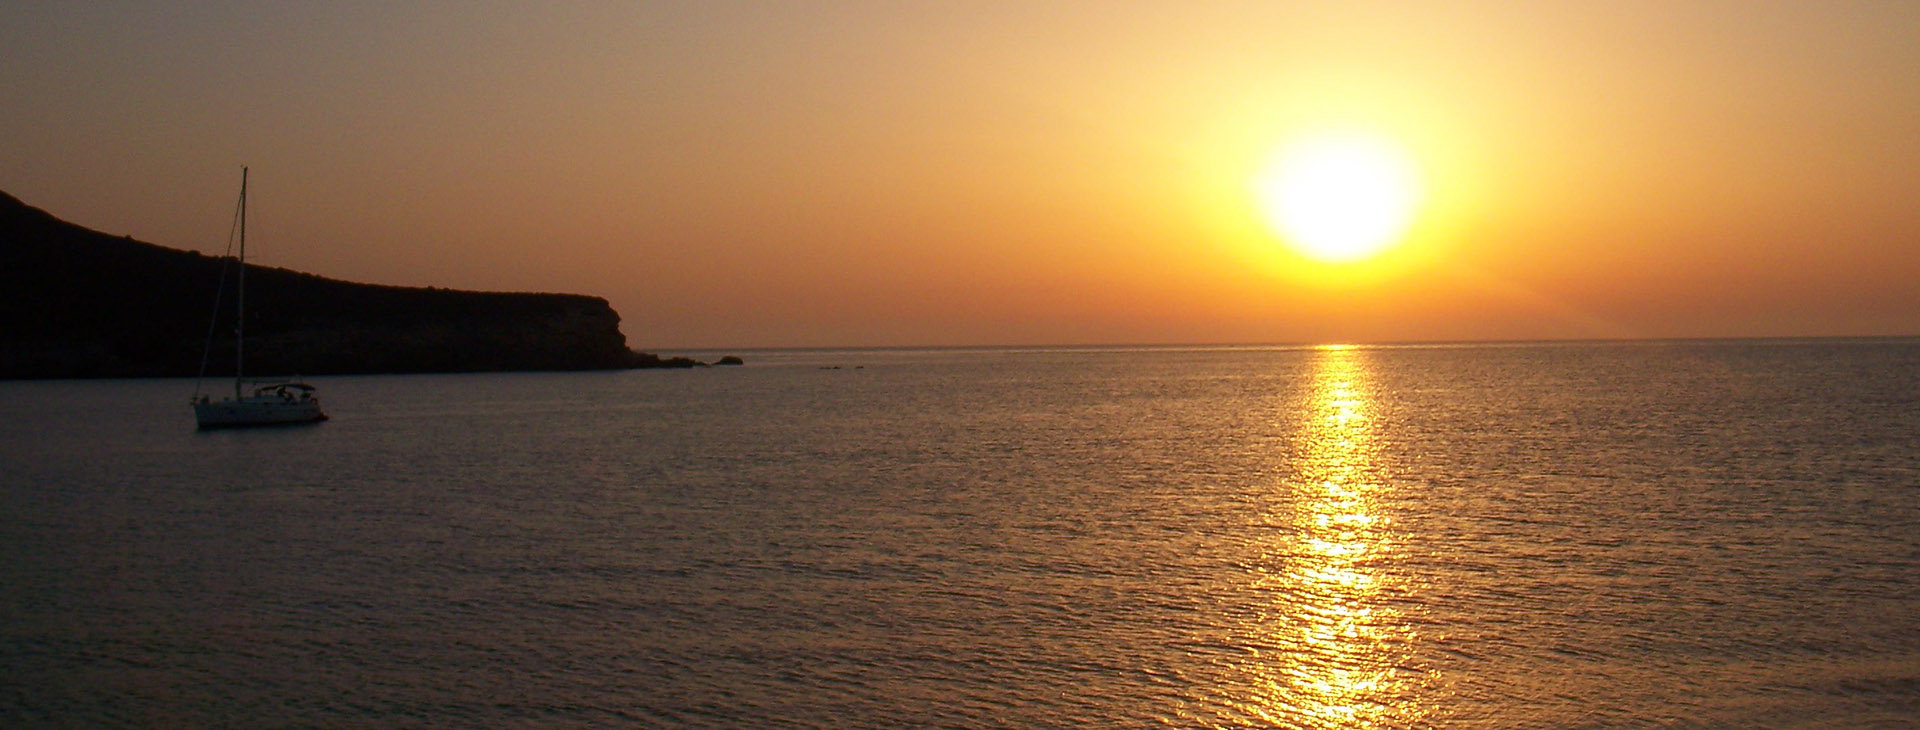 Sunset at Antiparos island